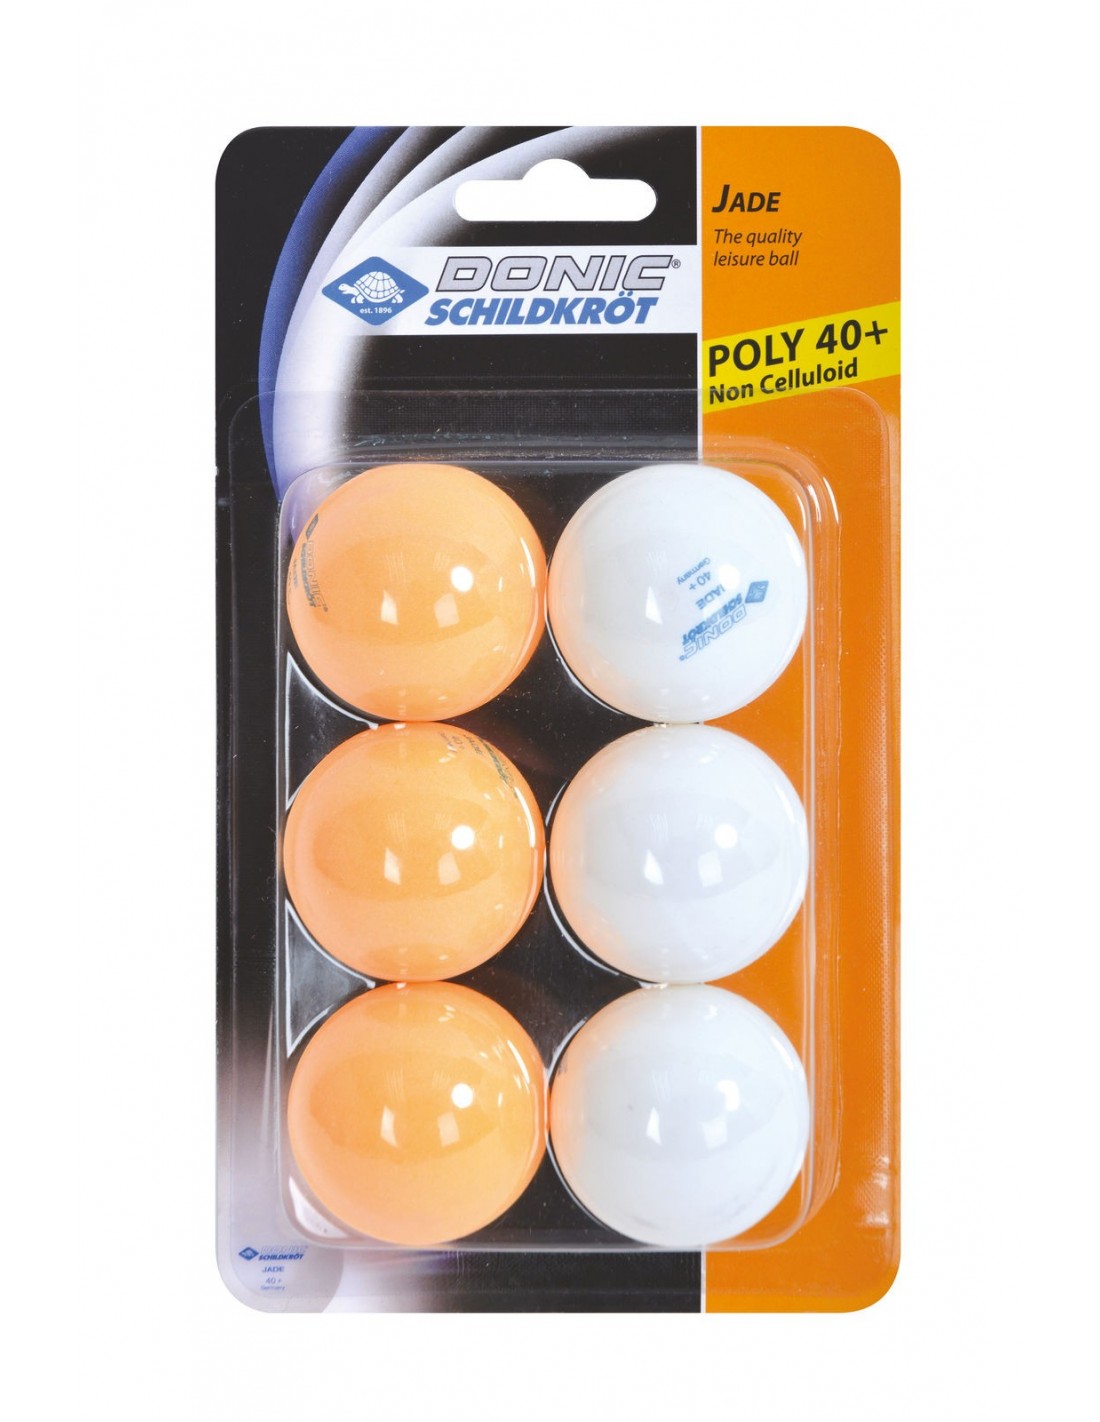 Donic-Schildkröt Tischtennisball Jade, Poly 40+ Qualität, 6 Stk. im Blister, 3x Weiß / 3x Orange von Donic Schidkröt Accessoires